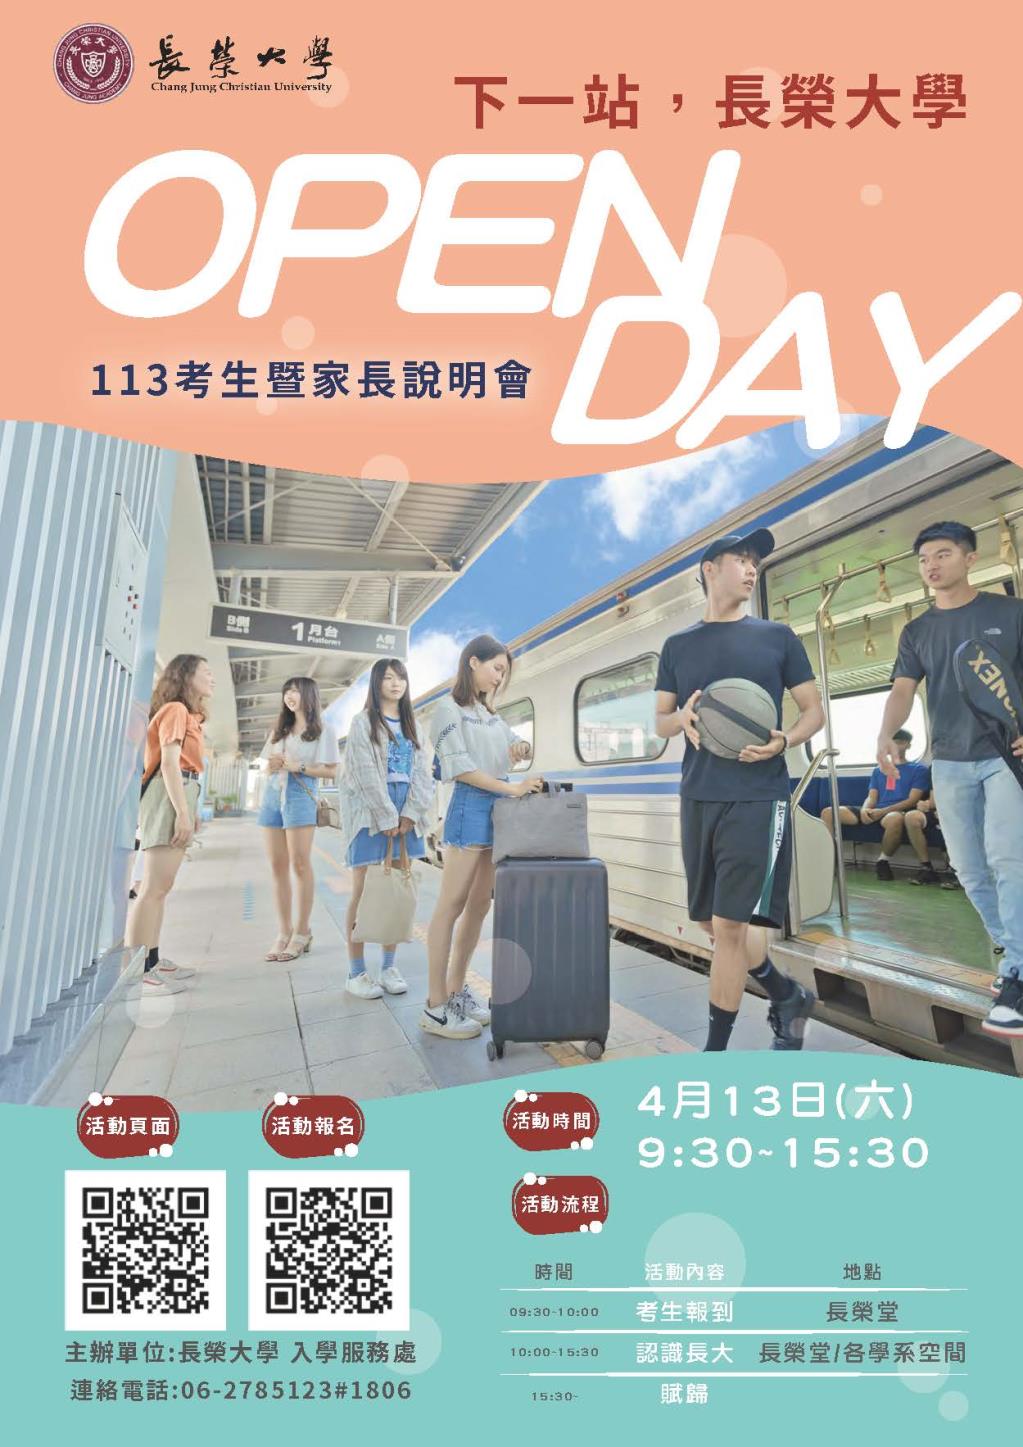 下一站，長榮大學 ! Open Day 113申請入學考生暨家長說明會